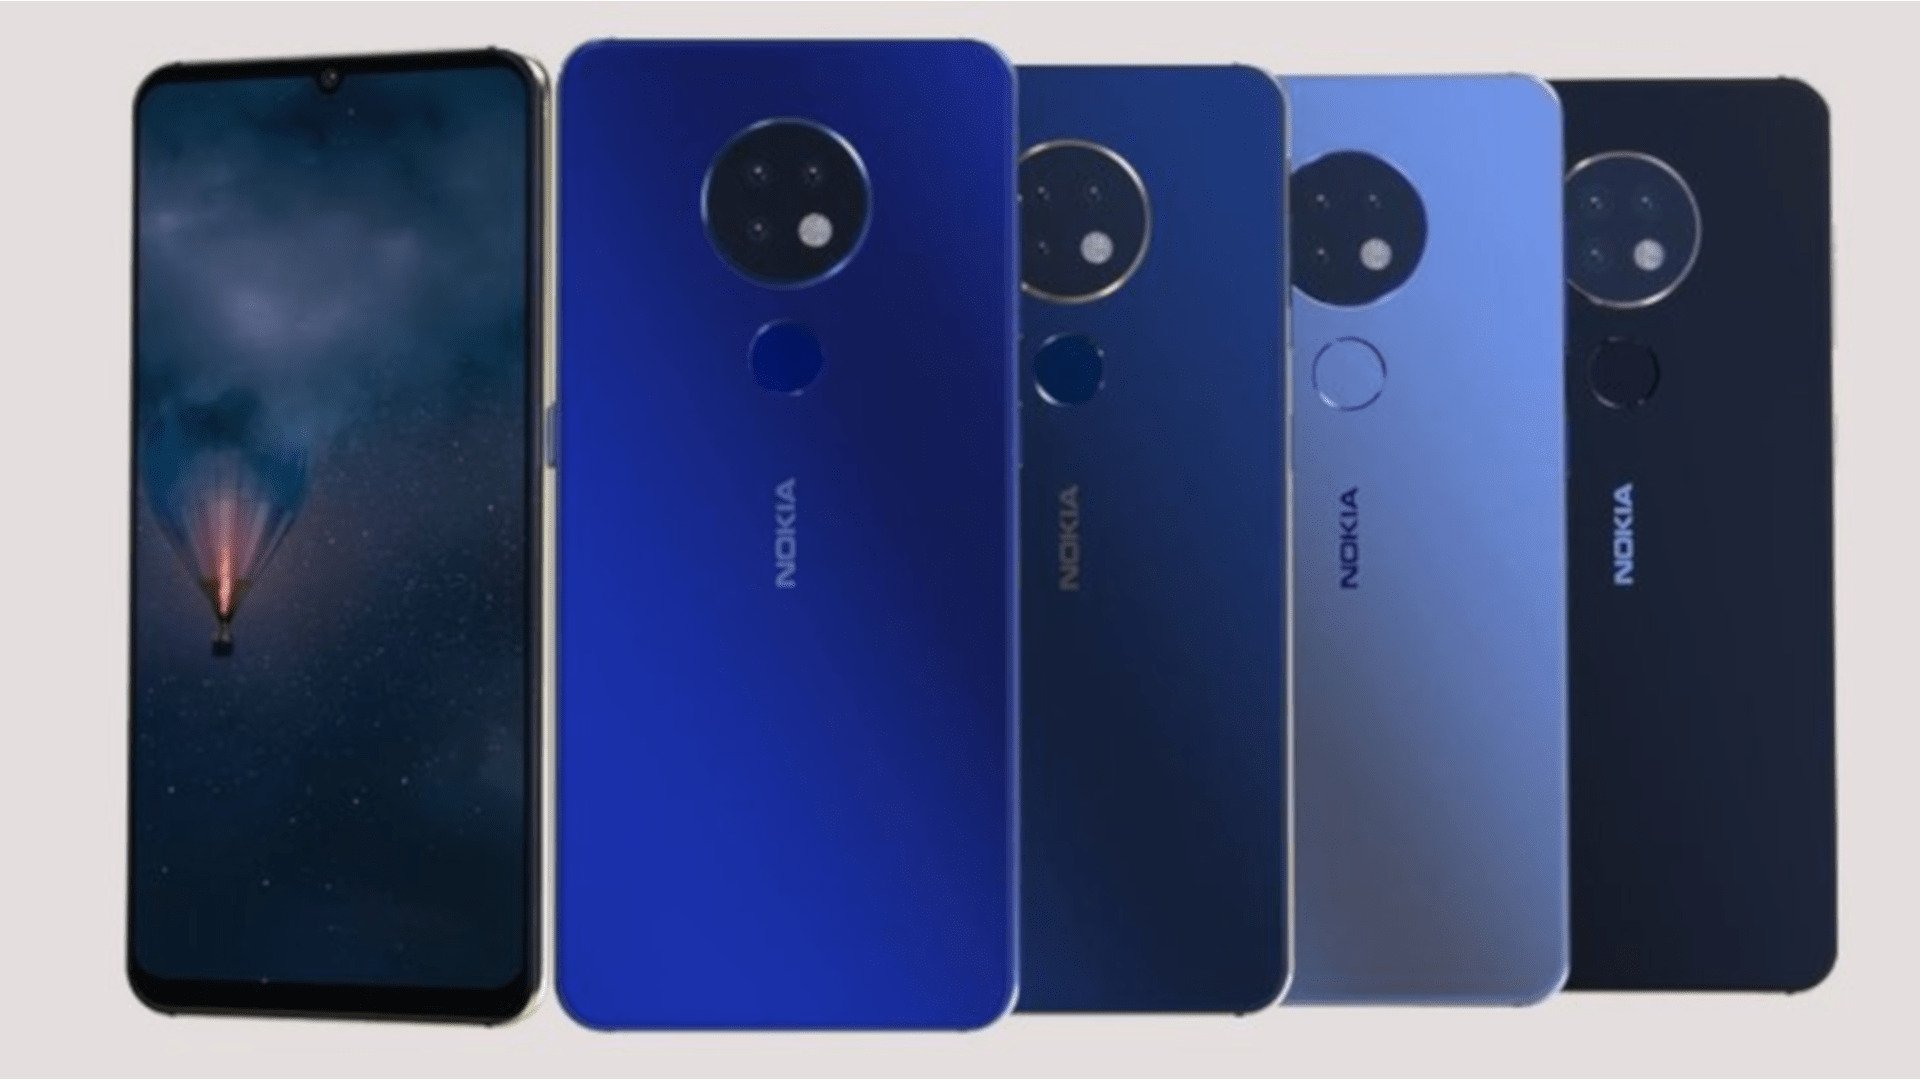 Nokia 5.3 Concept